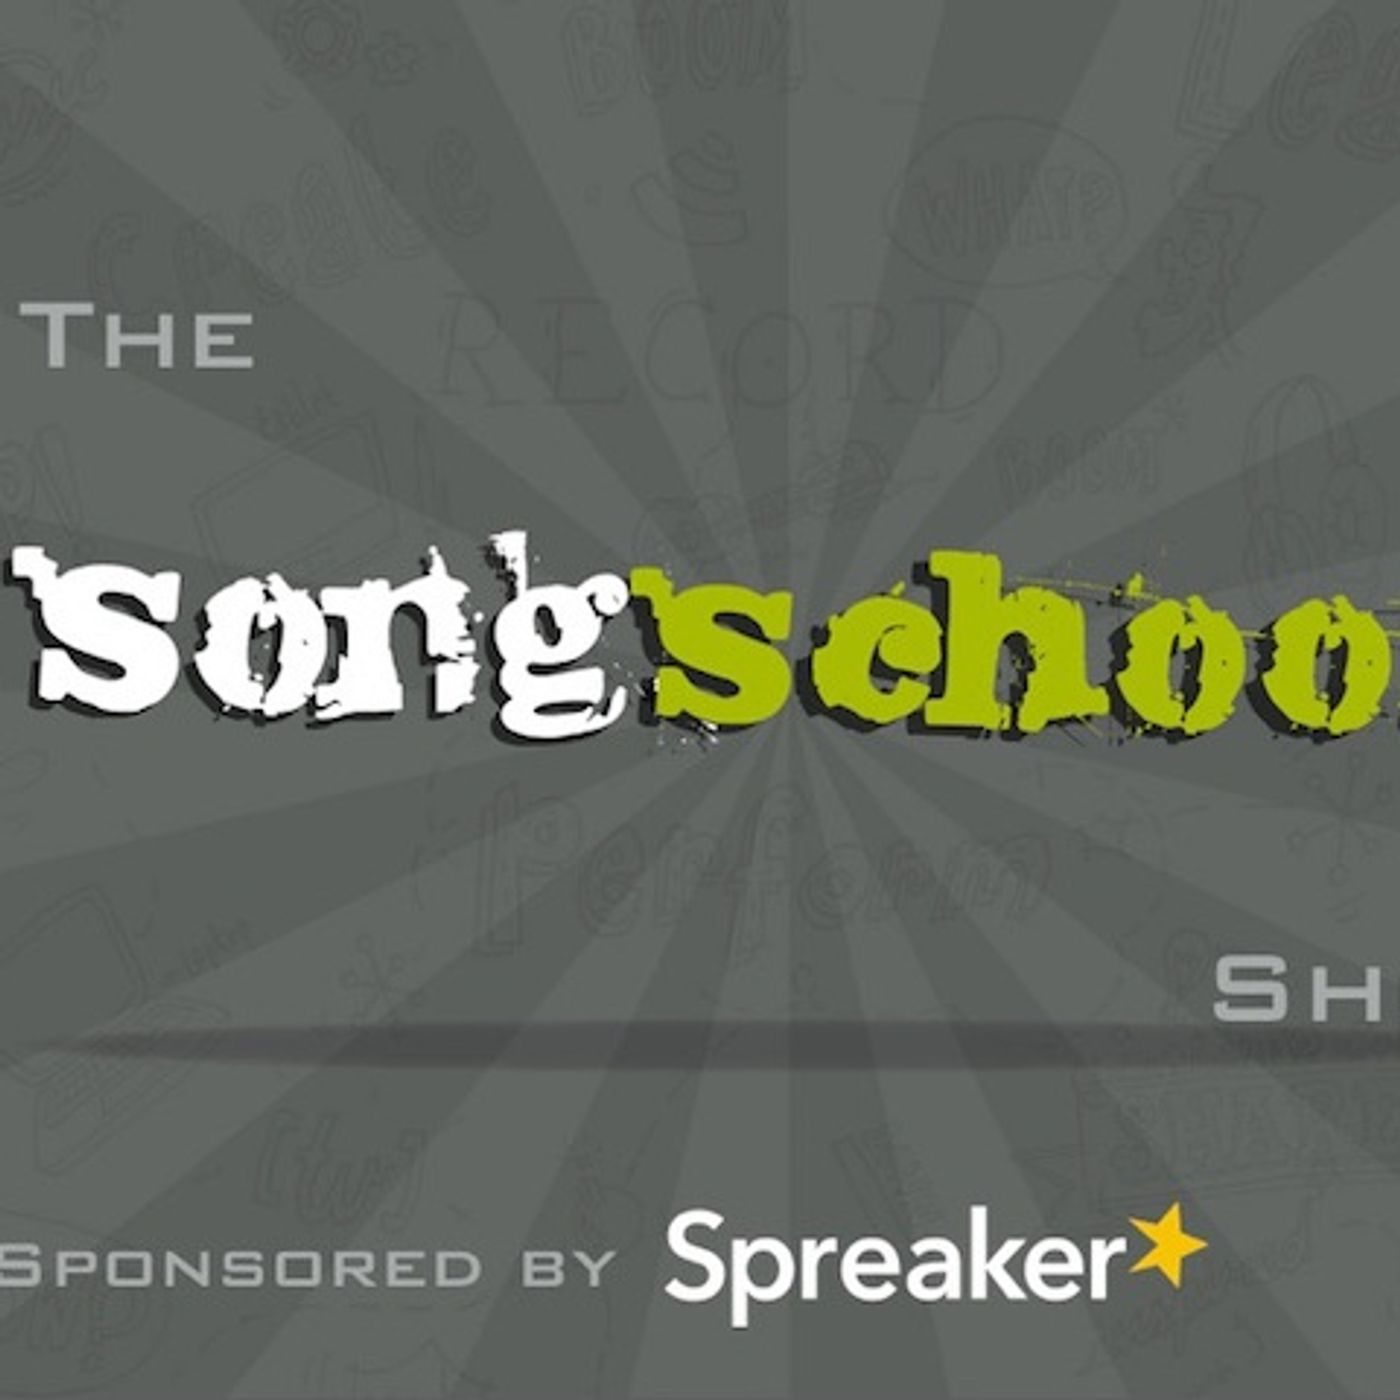 The Songschool Show @ Wexford CBS & St.Marys Dundalk